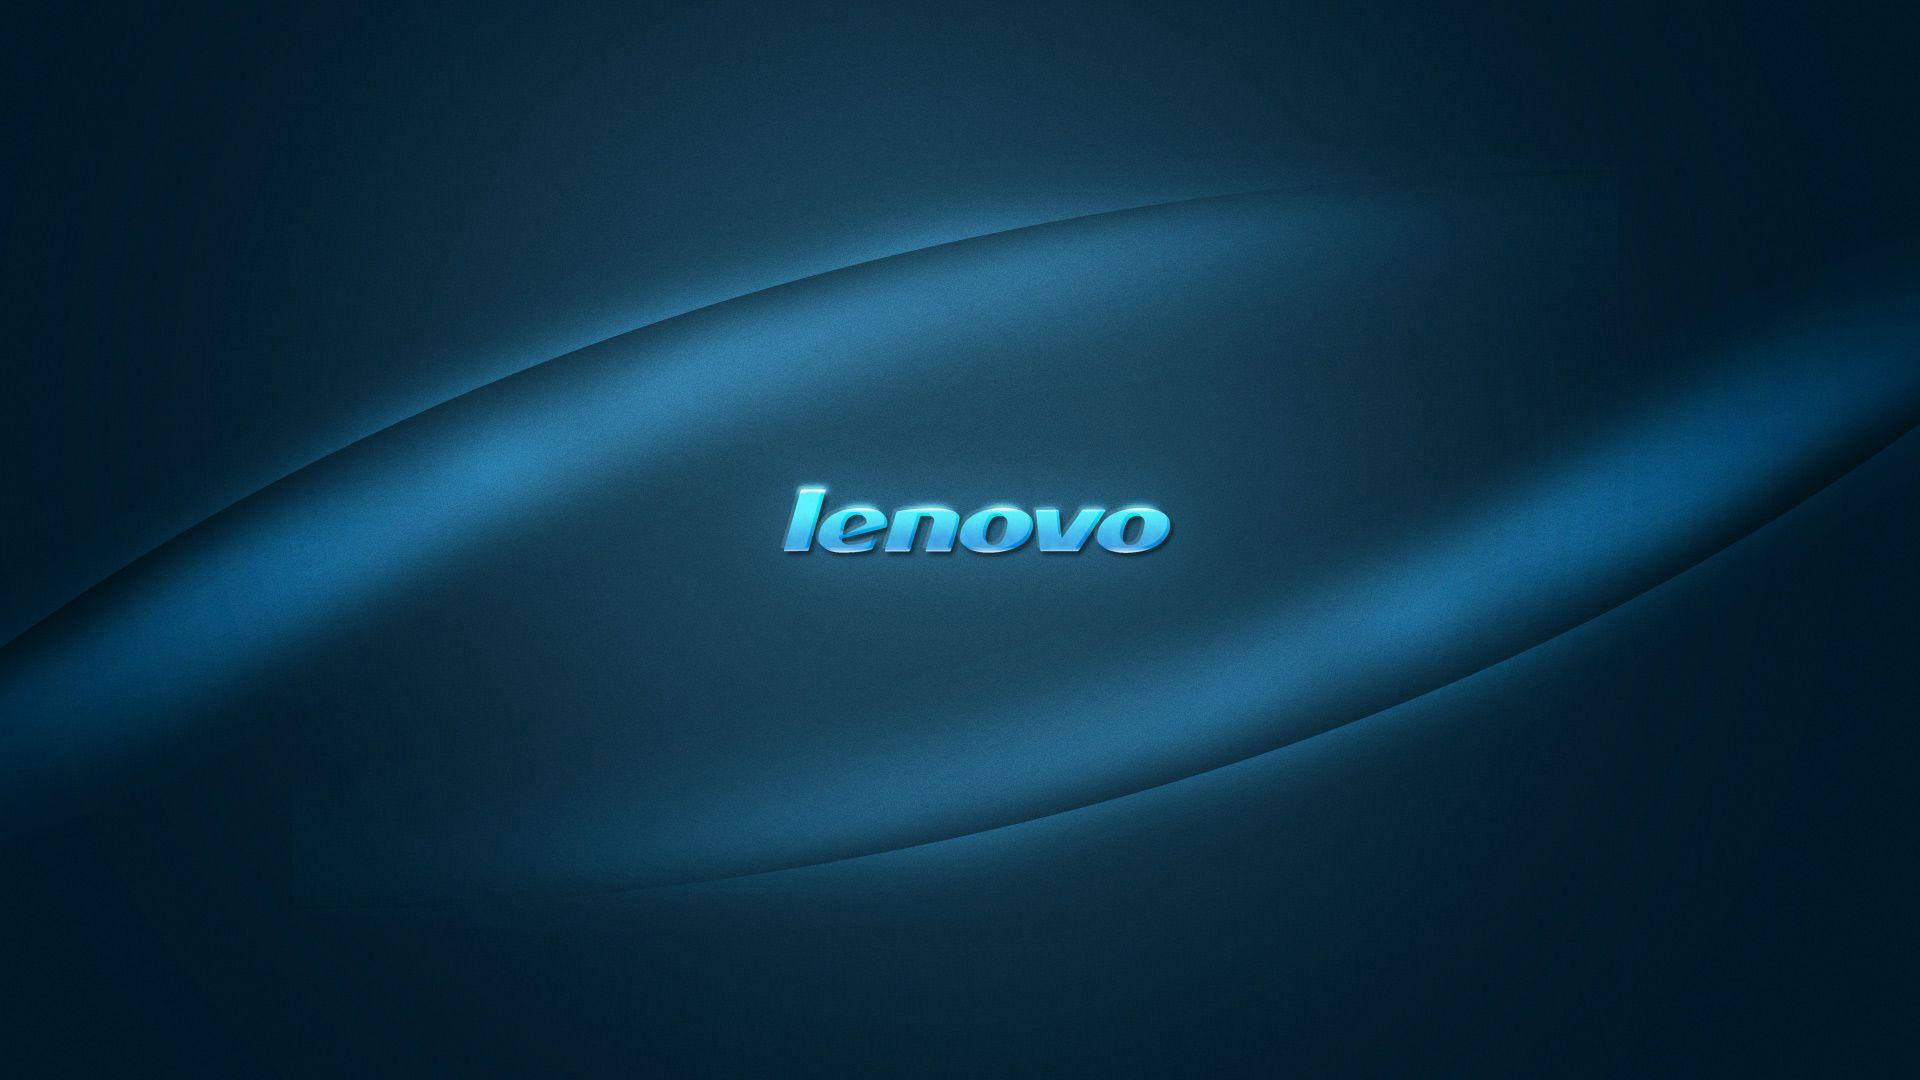 200+] Lenovo Hd Wallpapers | Wallpapers.com